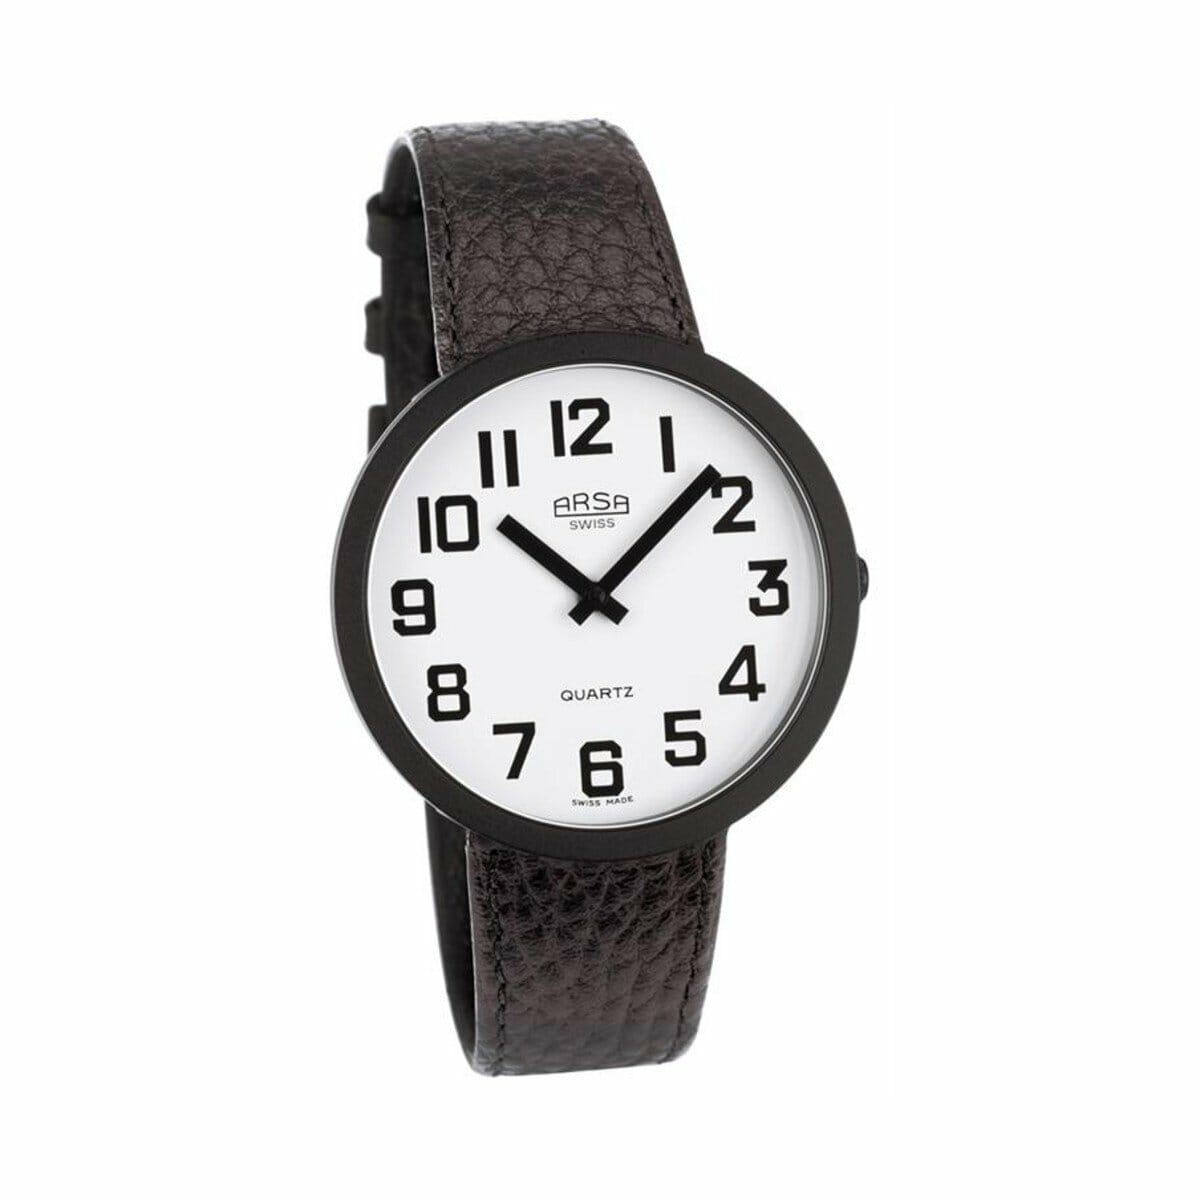 Arsa Vision horloge - Wit Online bestellen - Low Vision Shop